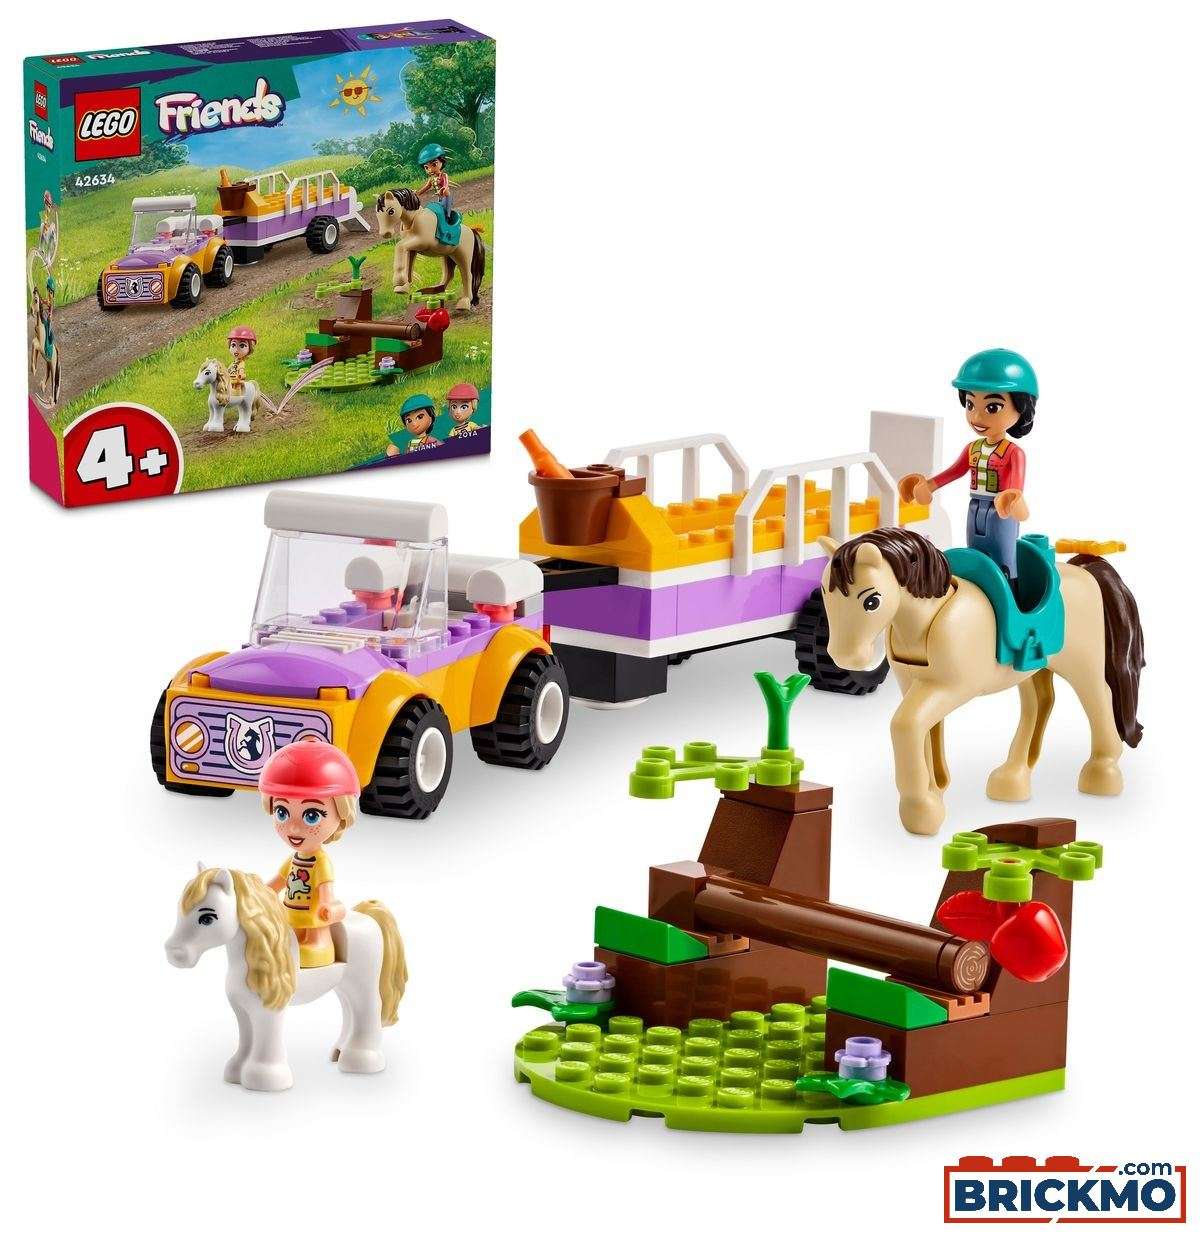 LEGO Friends 42634 Přívěs s koněm a poníkem 42634